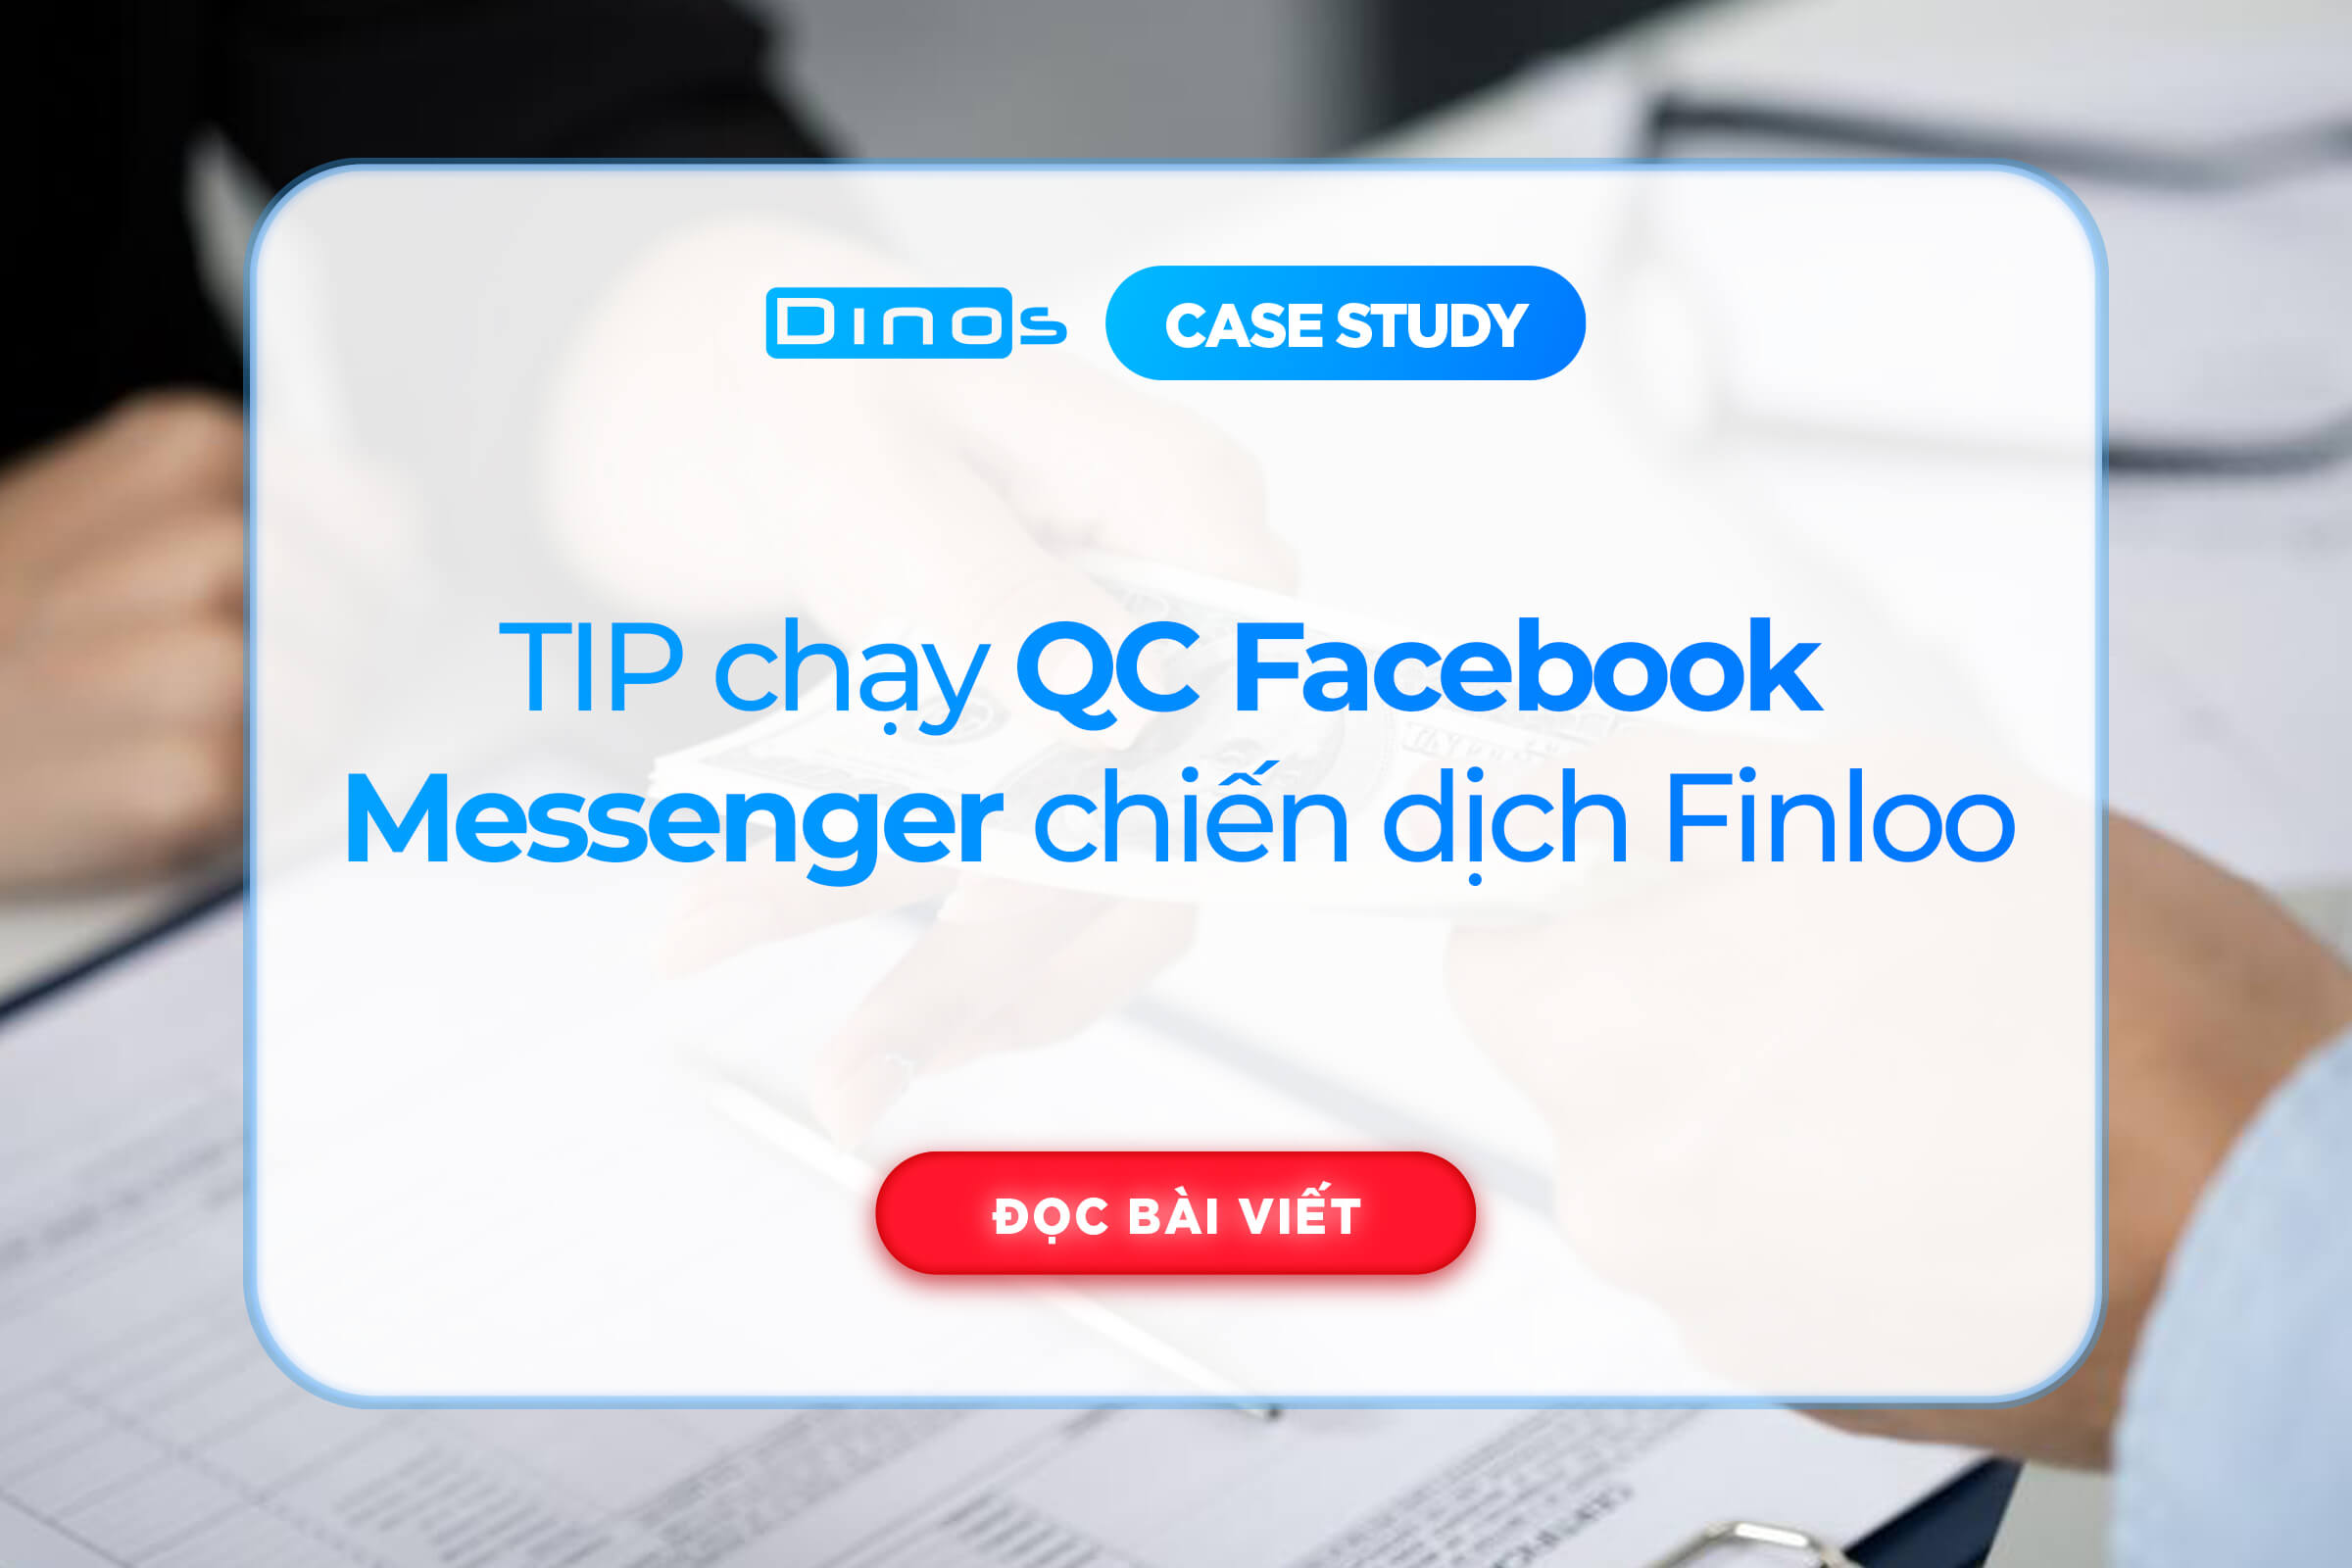 Kinh nghiệm chạy quảng cáo Messenger Facebook chiến dịch Finloo